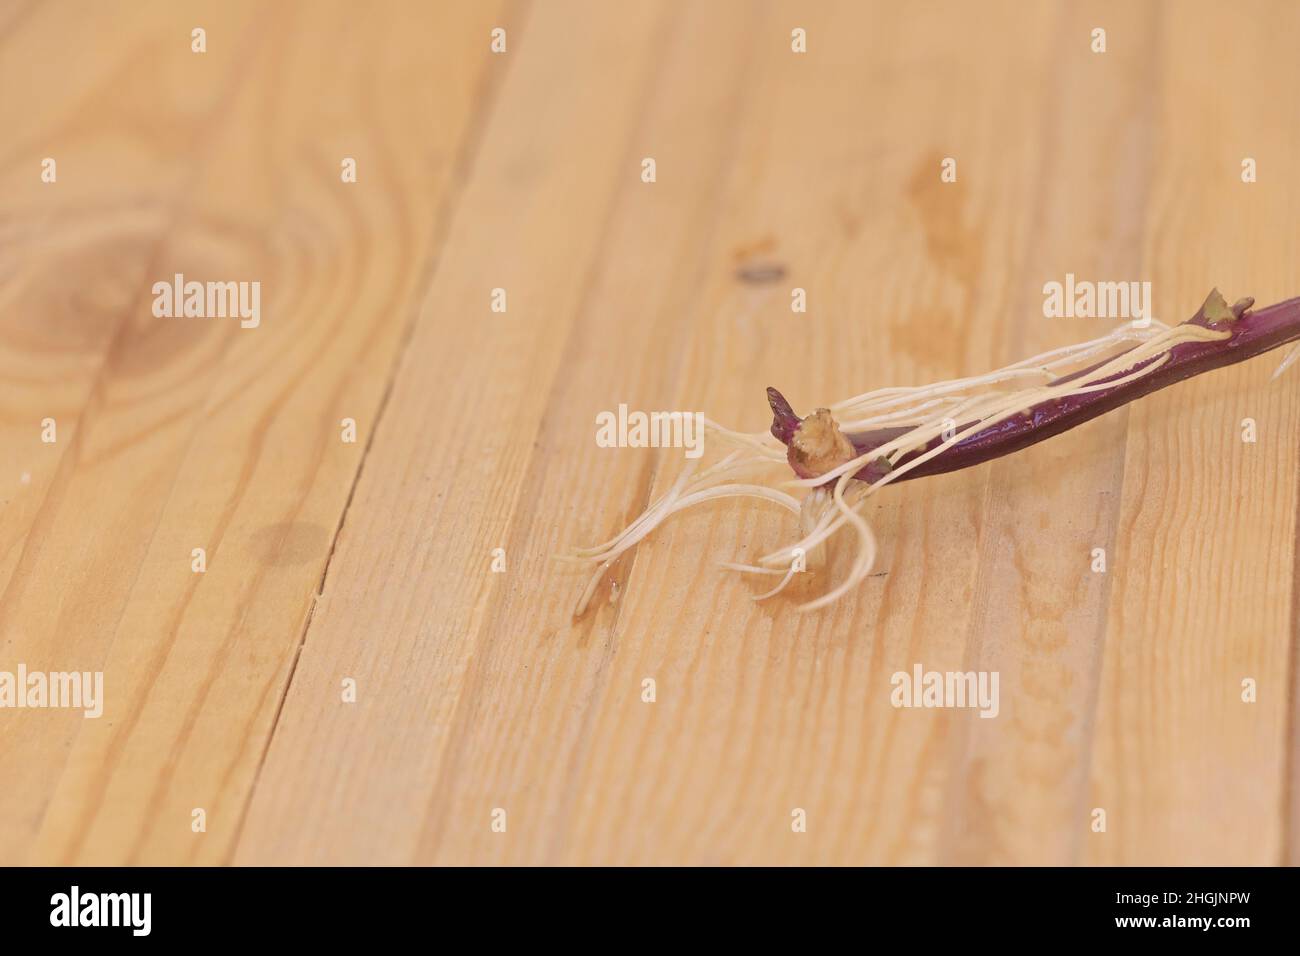 Ein verwurzeltes Schneiden von Süßkartoffelpflanze - hölzerner Hintergrund Stockfoto